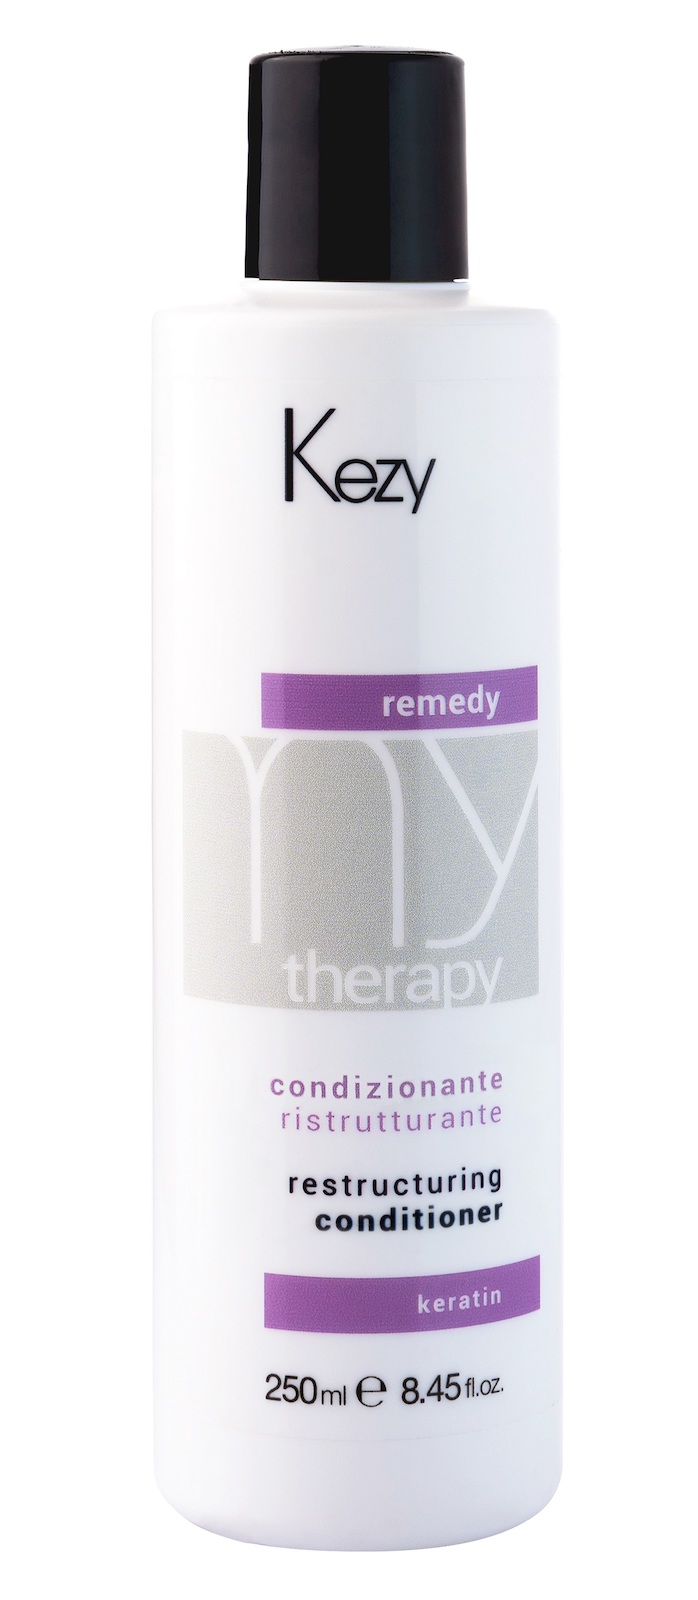 Кондиционер KEZY реструктурирующий с кератином для волос 250мл, Линия MY THERAPY кондиционер silk therapy